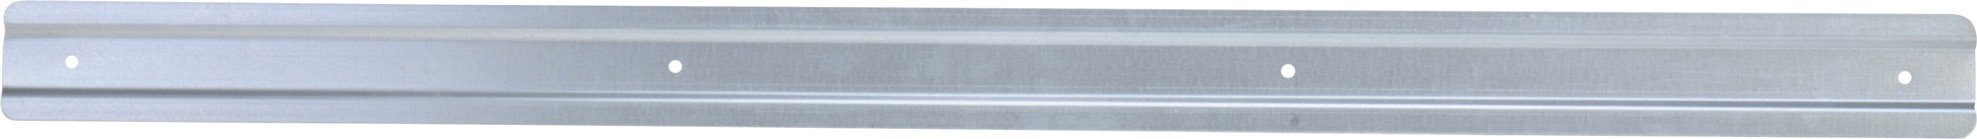 Bild von Metallschiene für Sichtlagerkasten Gr.1-3 Länge 970 mm